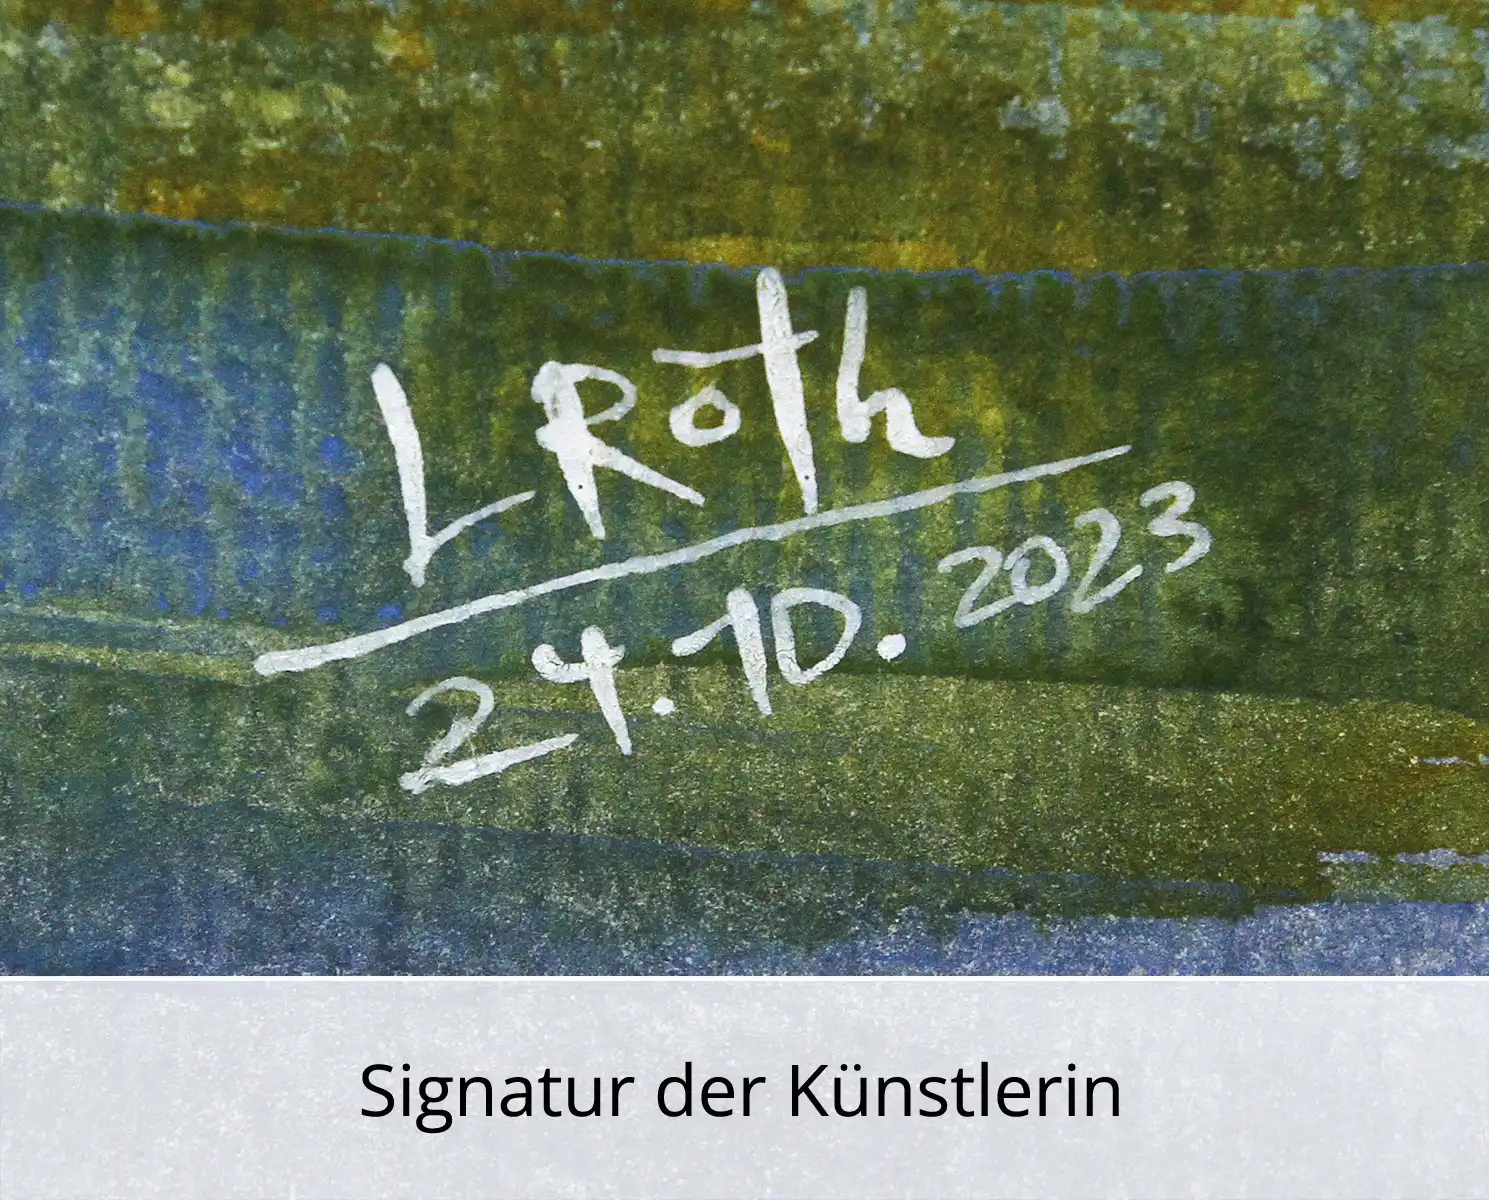 L. Roth: "Elbelandschaft", originale Grafik/Zeichnung (Unikat)